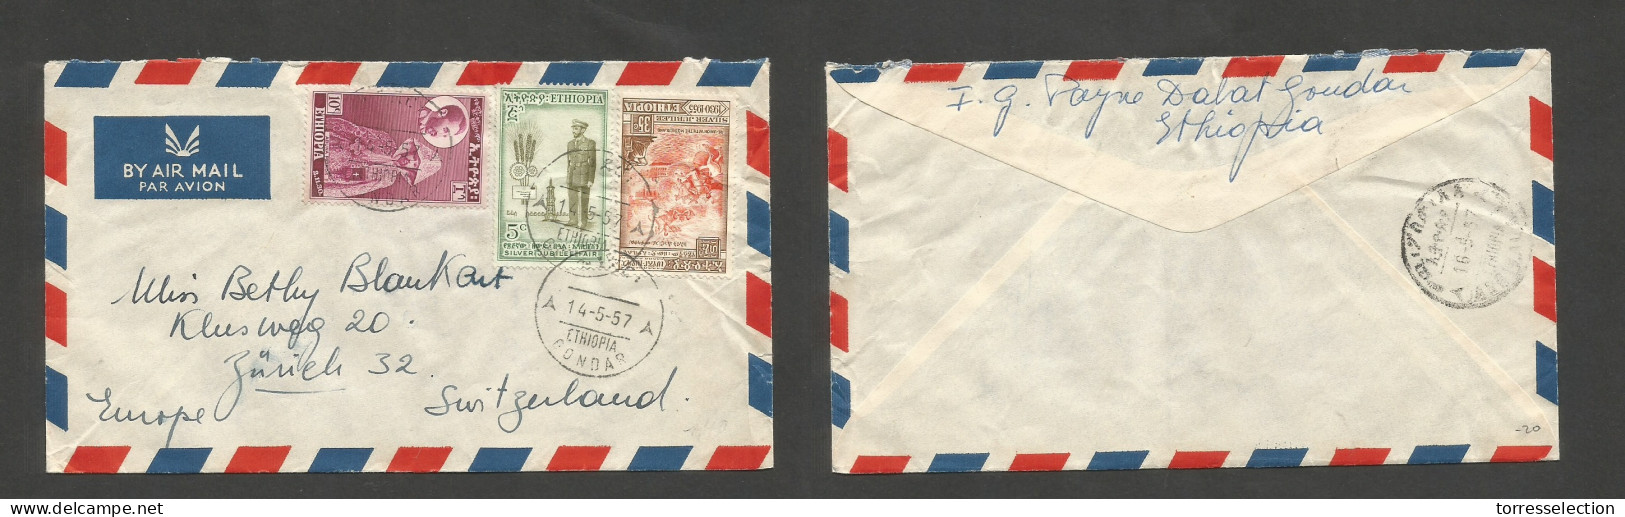 ETHIOPIA. 1957 (14 May) Gondar - Switzerland, Zurich. Air Multifkd Mixed Issues Envelope, Tied Cds. VF. SALE. - Etiopia